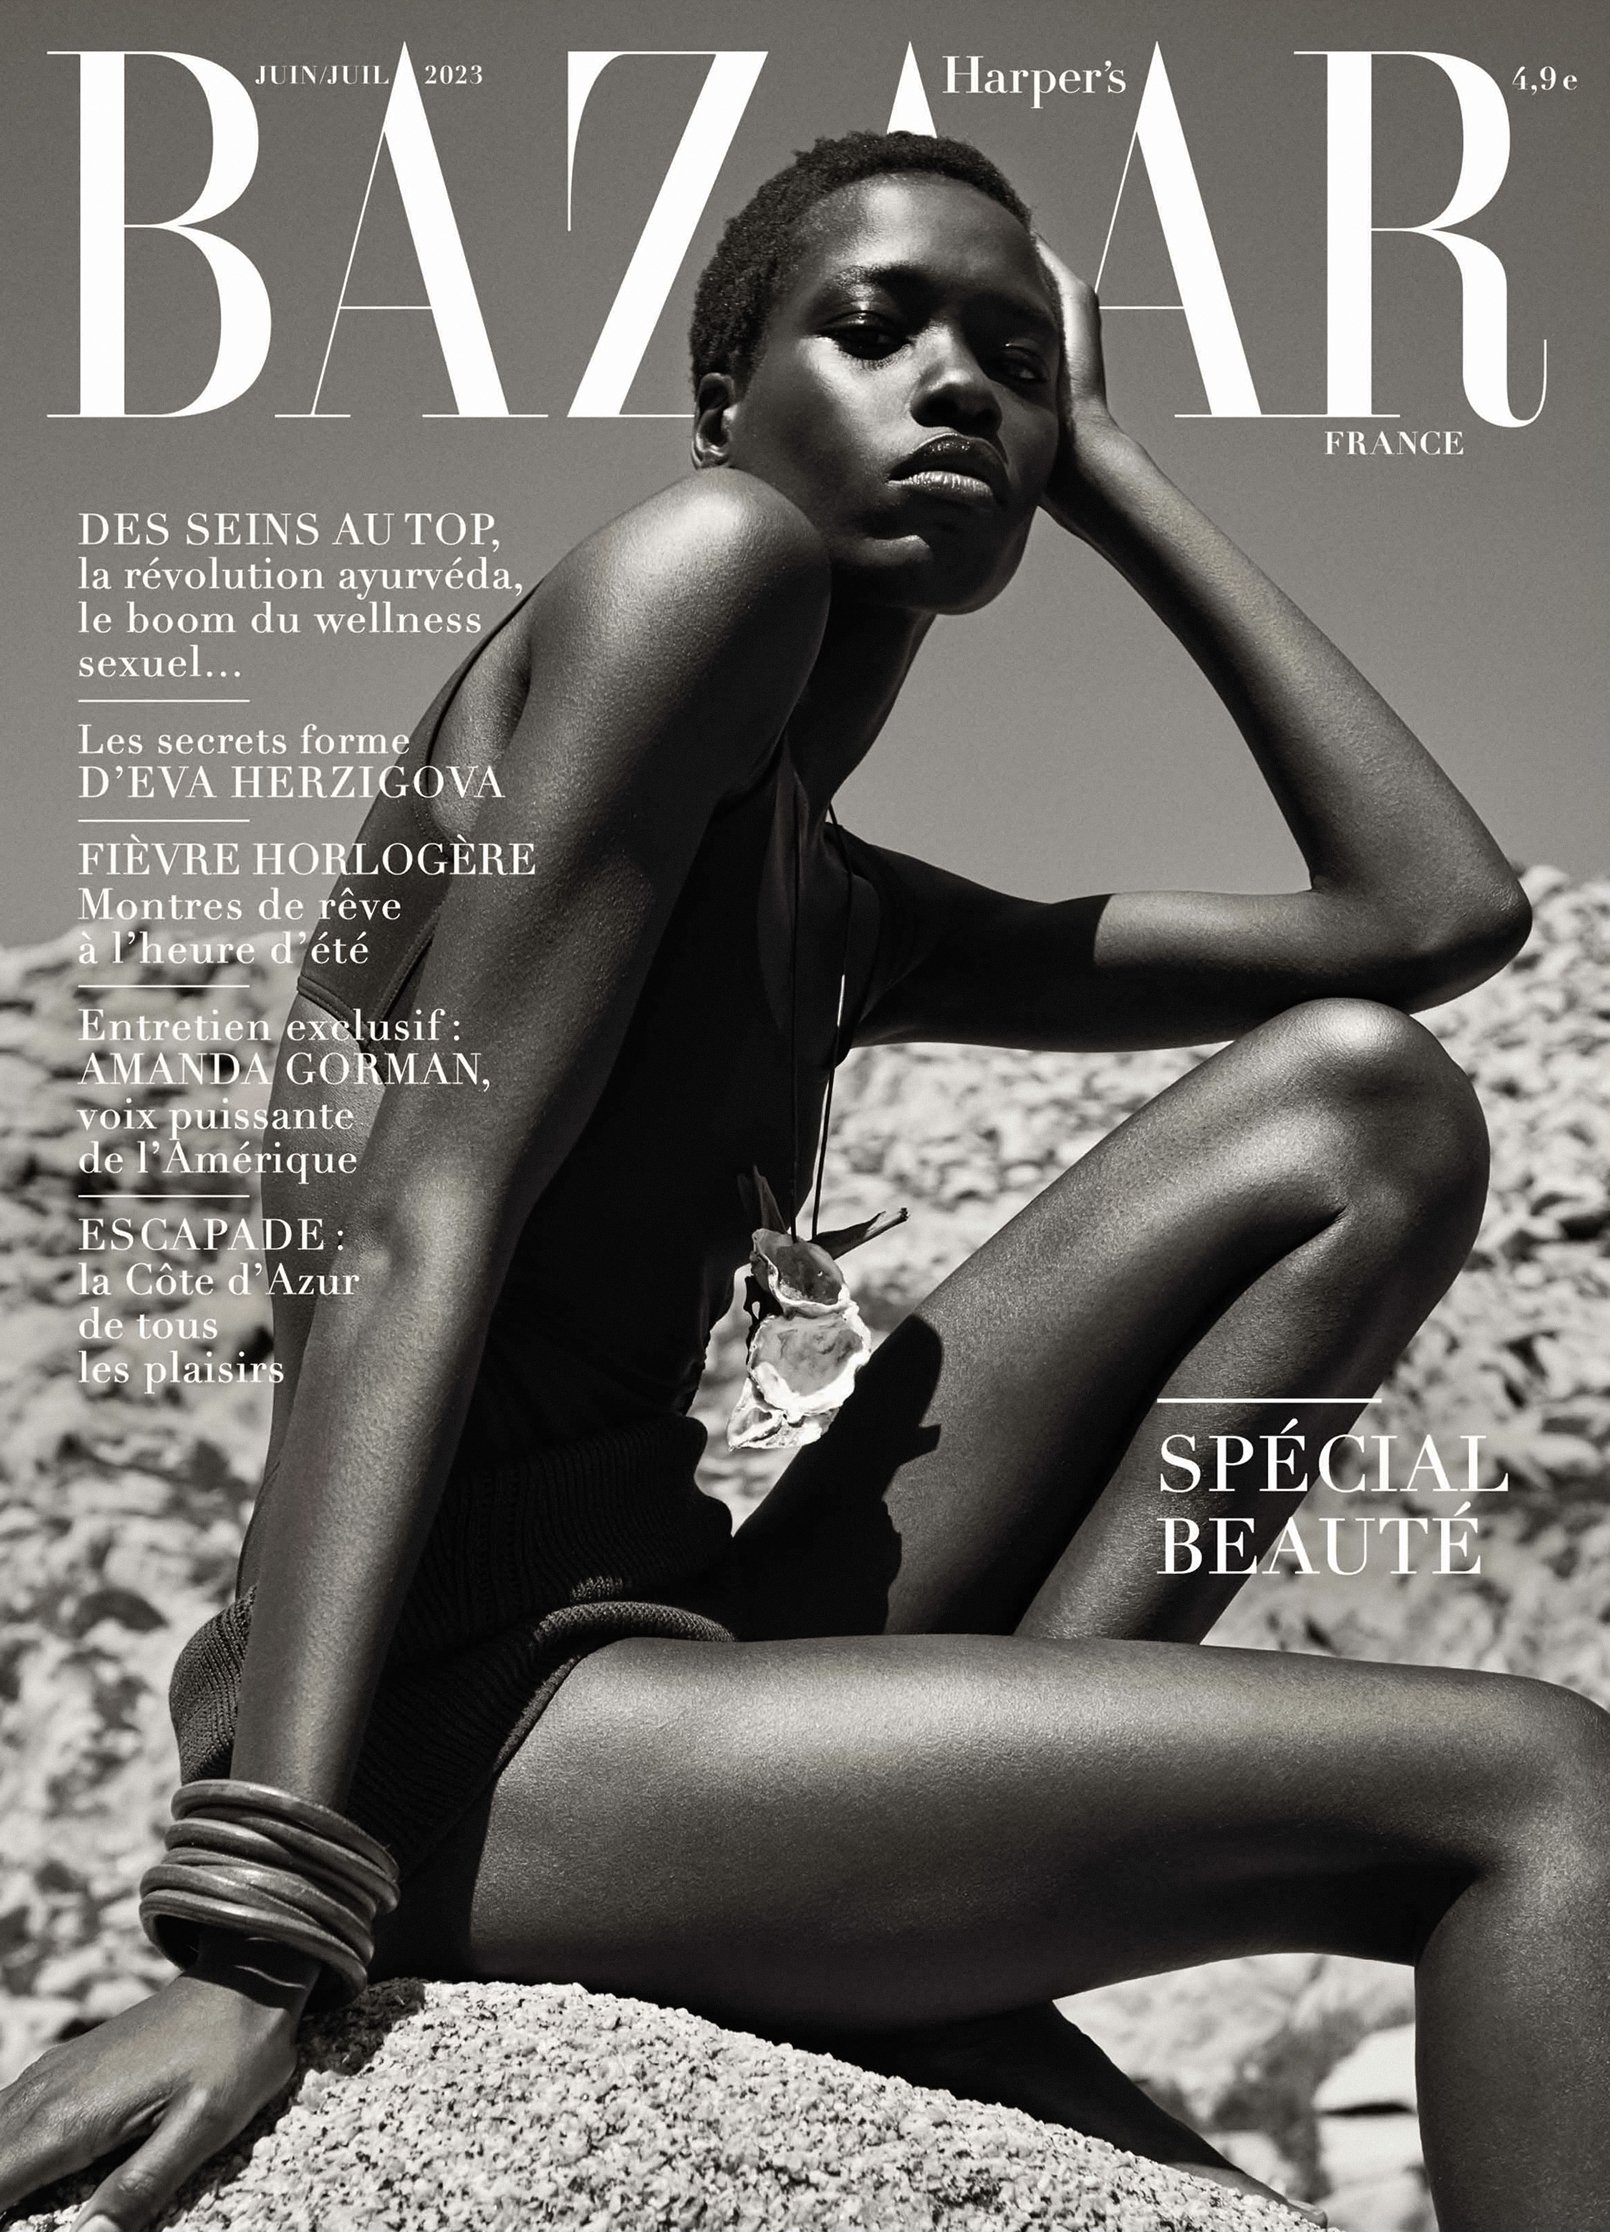 Harpers-Bazaar-June-July-2023-Covers-by-Mario-Sorrenti00004.jpeg